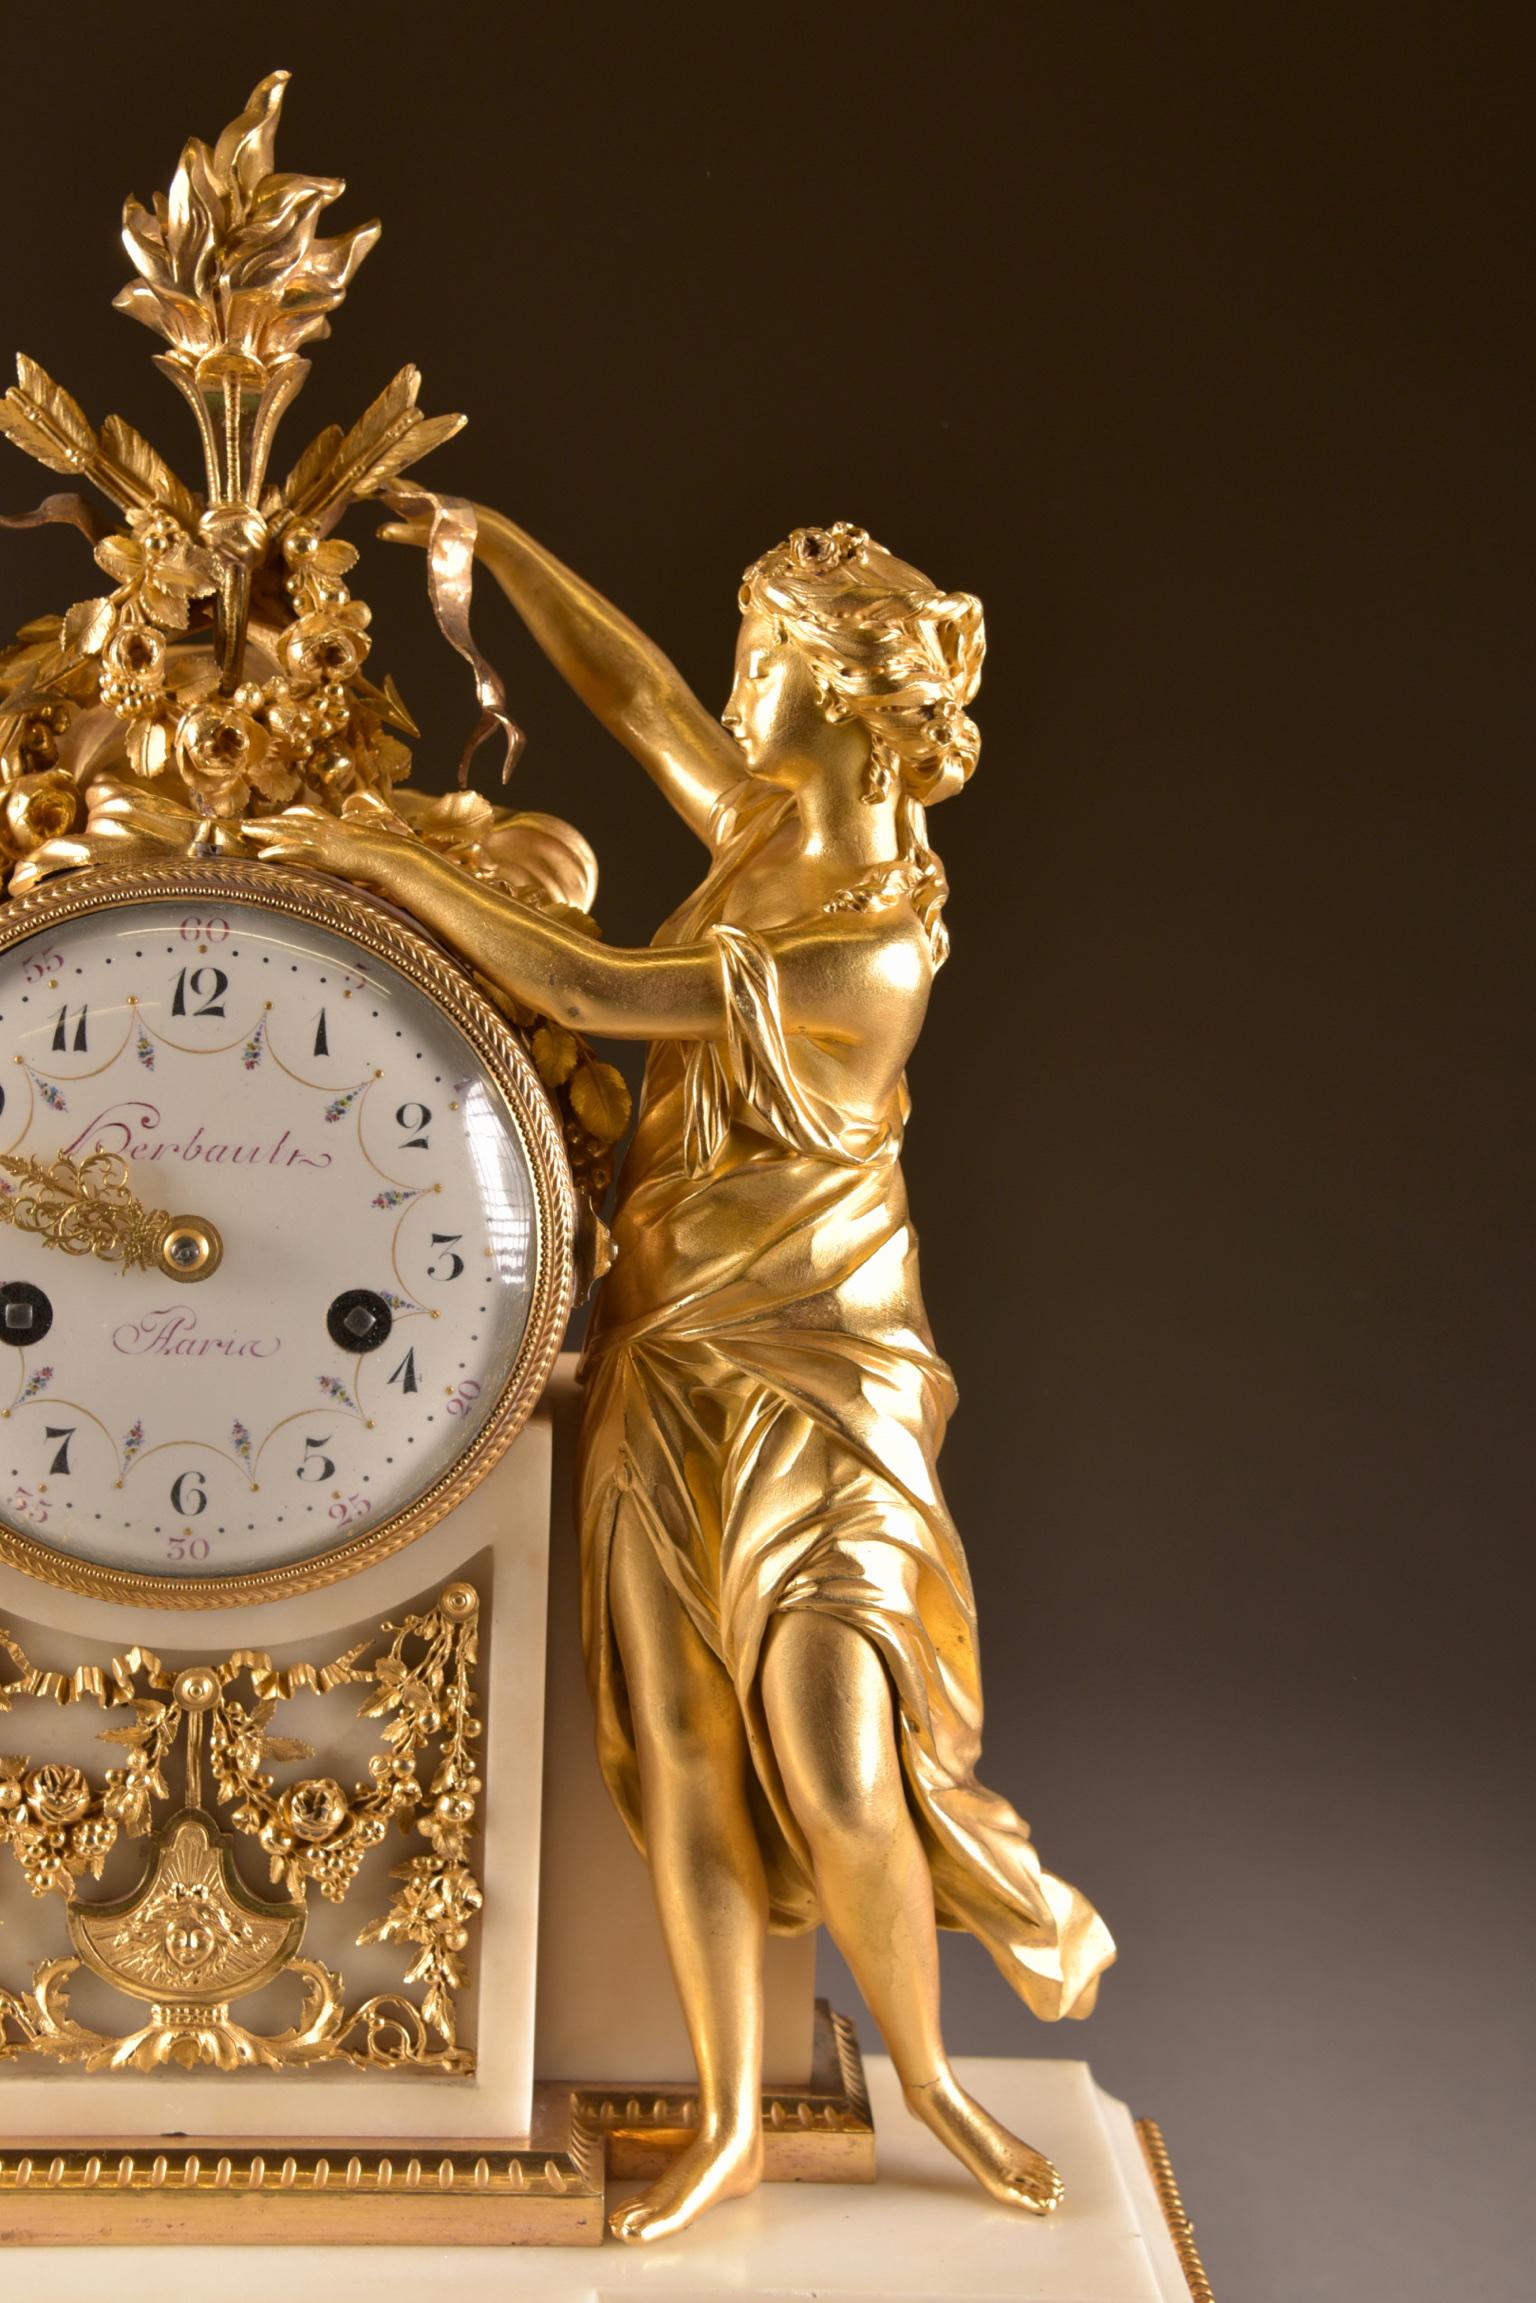 Gilt Large Louis XVI clock (1780), Venus and cherub, Amor wird seiner Waffen beraubt